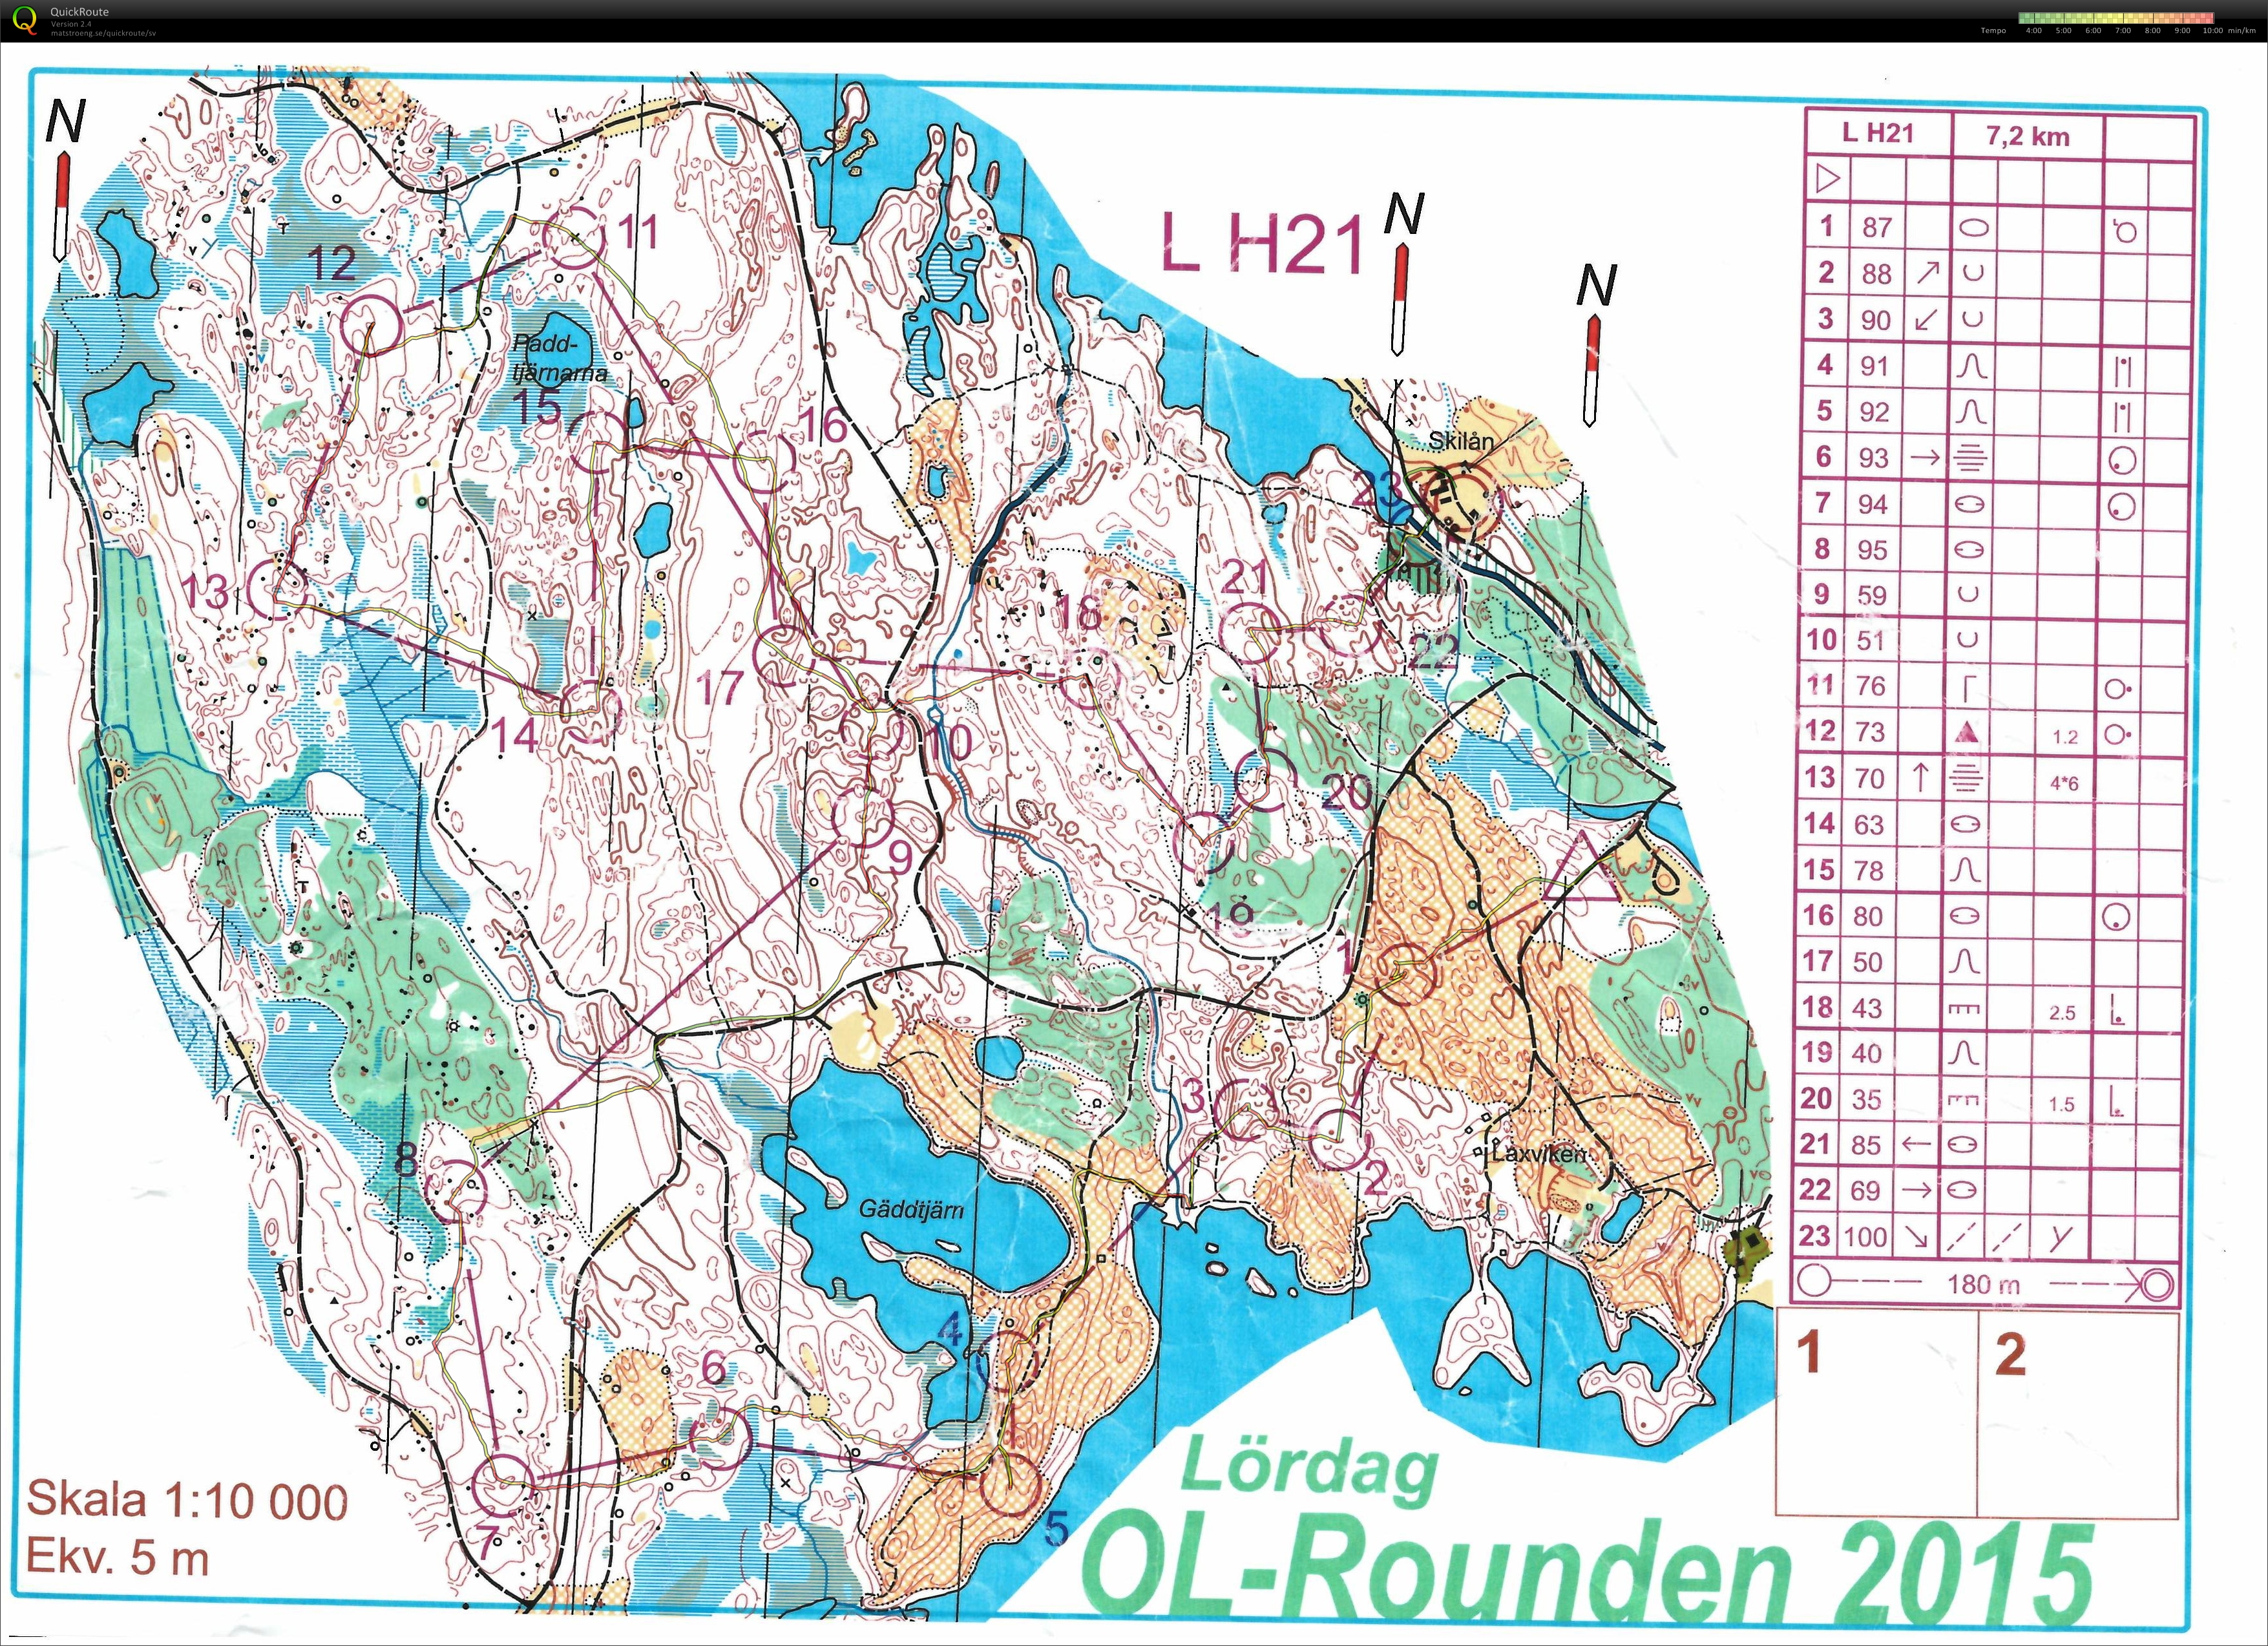 OL-Rounden, Förlängd medel (15.08.2015)